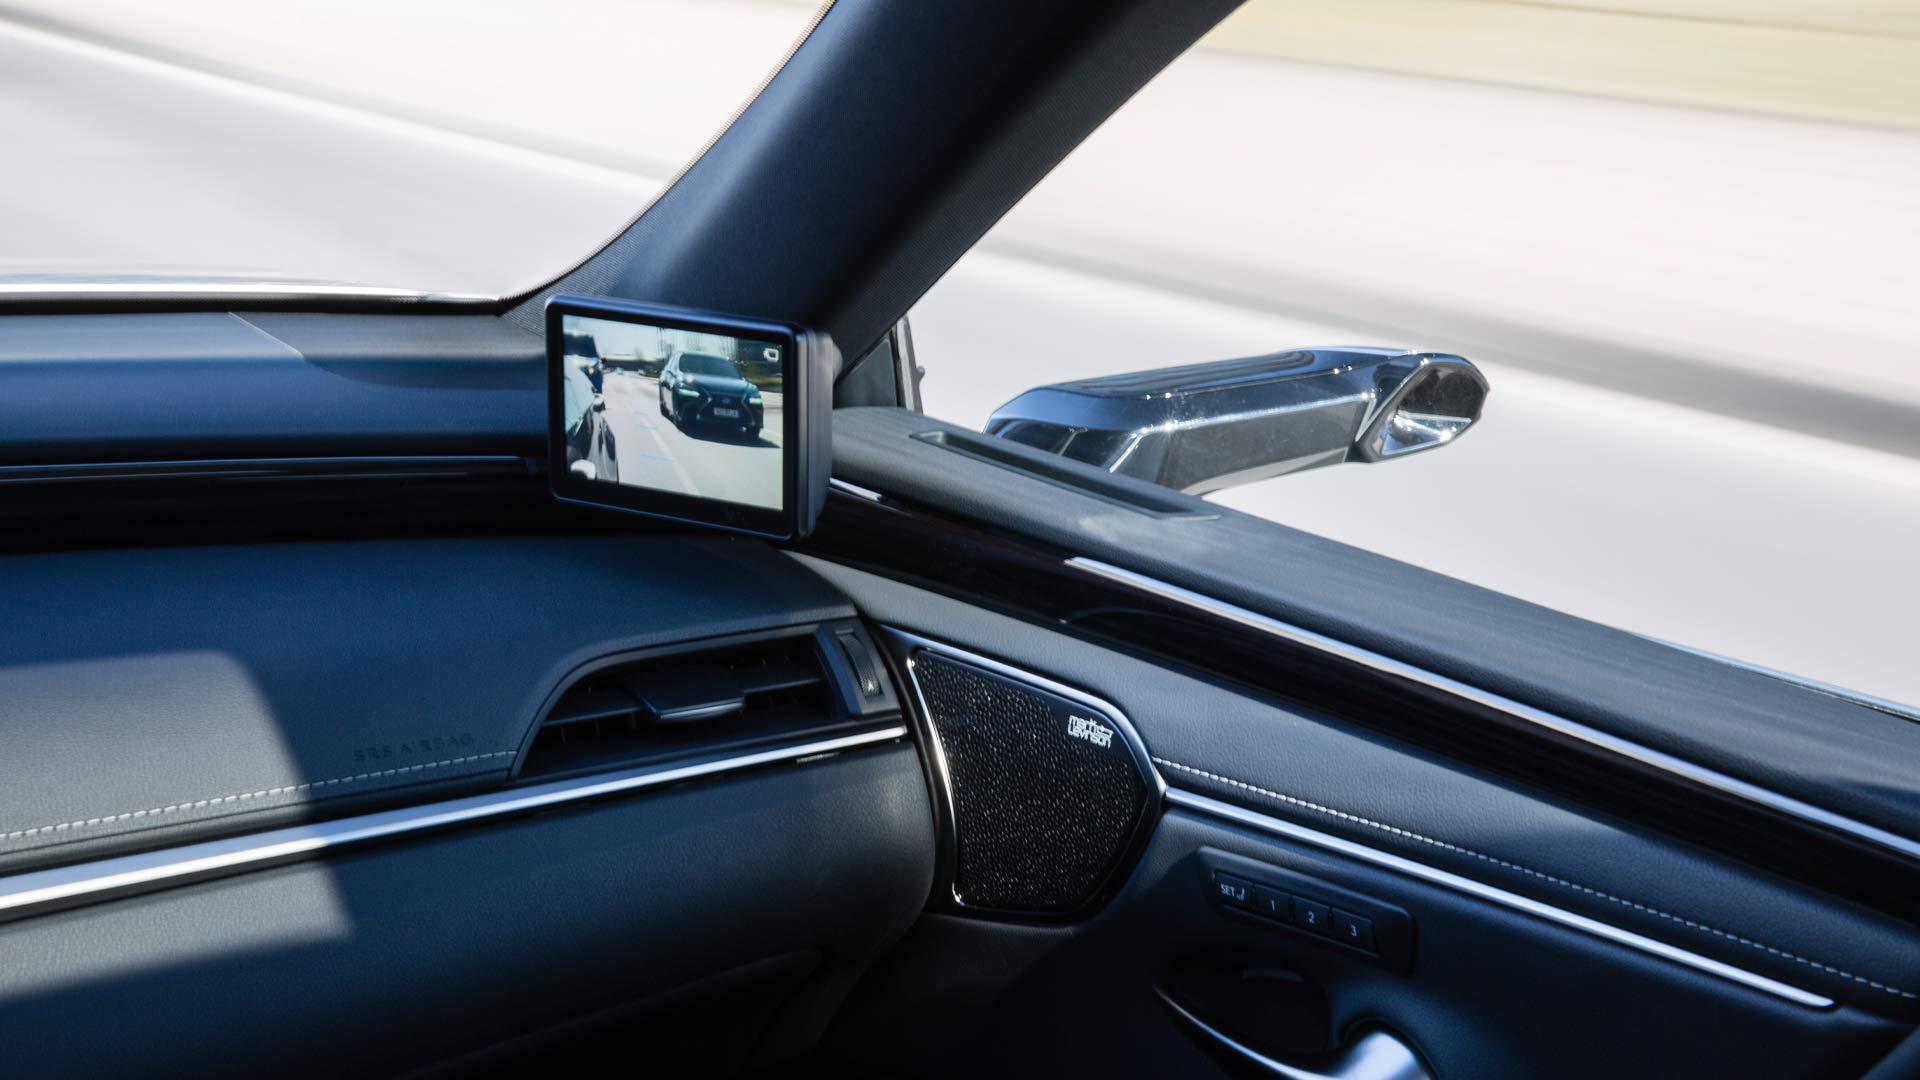 Seitenspiegel kameraaufnahmen im inneren des Autos mithilfe eines Bildschirms